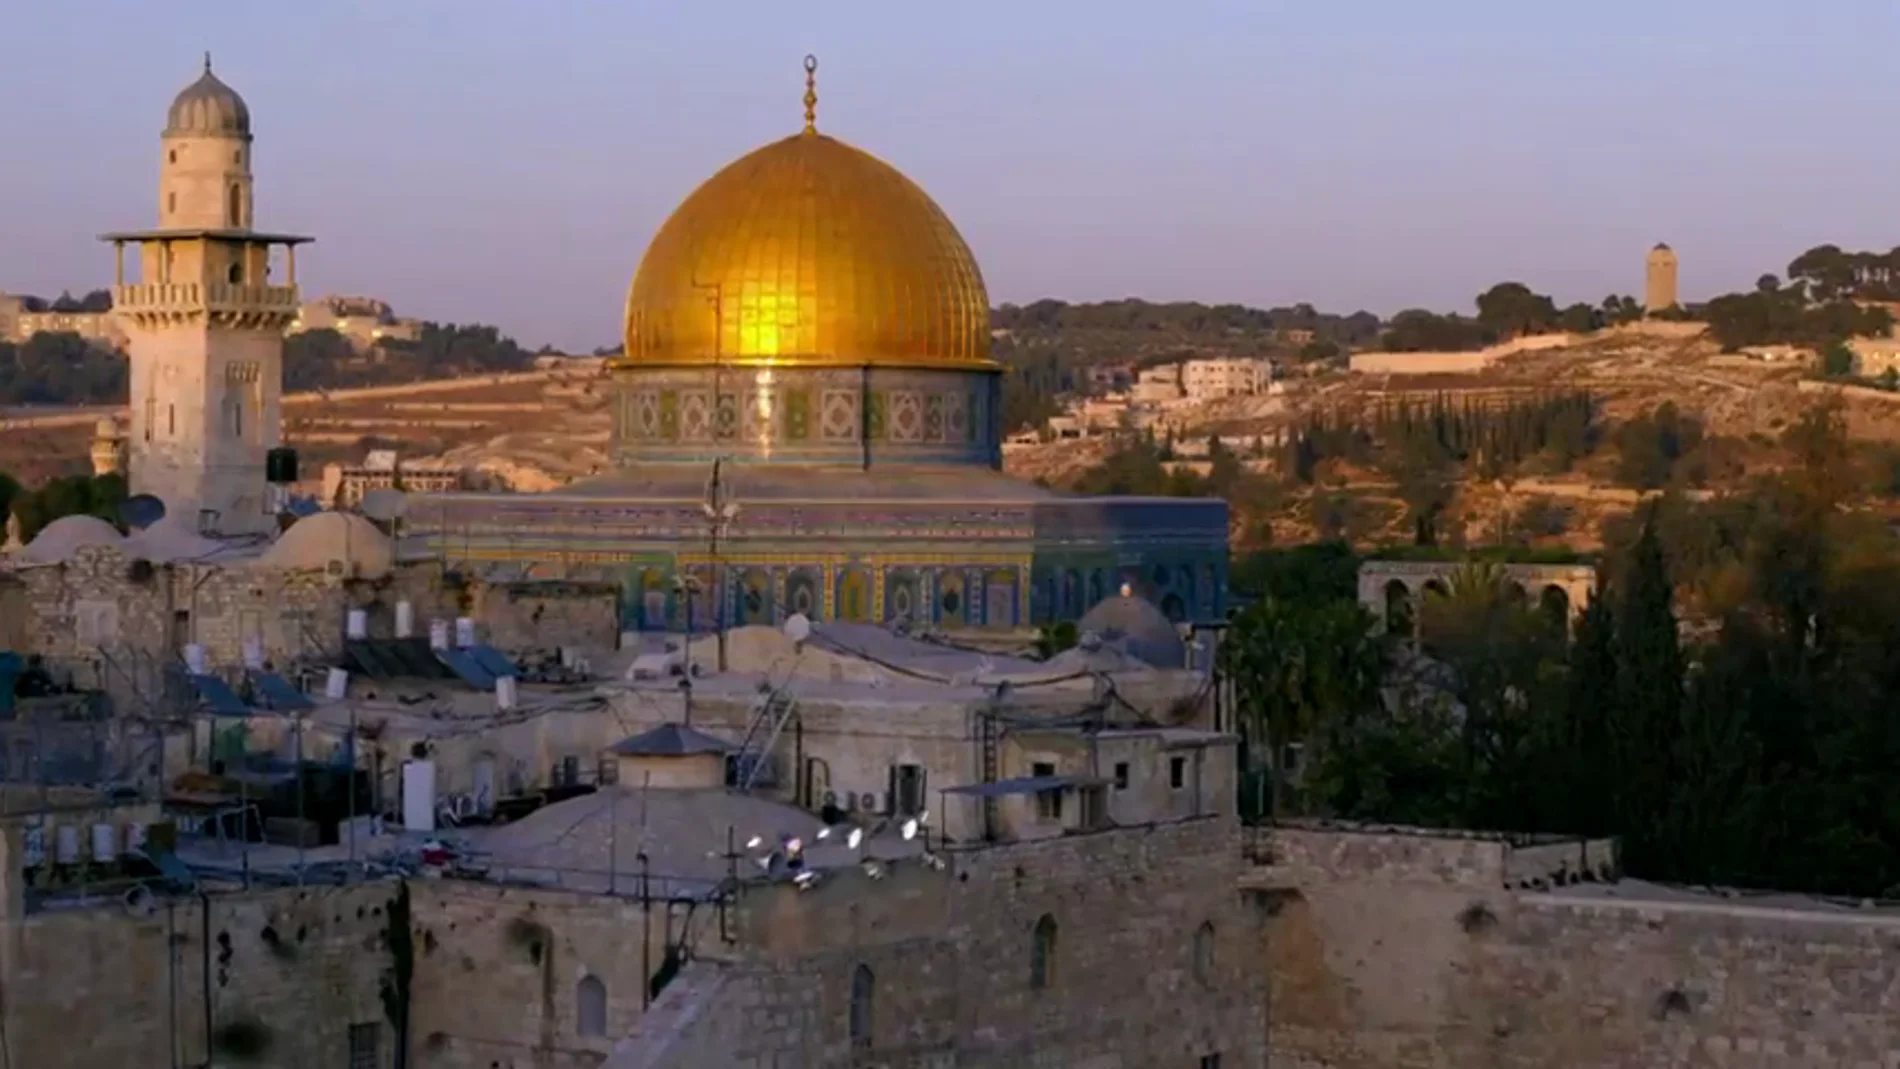  Jerusalen es un polvorín de tensiones religiosas